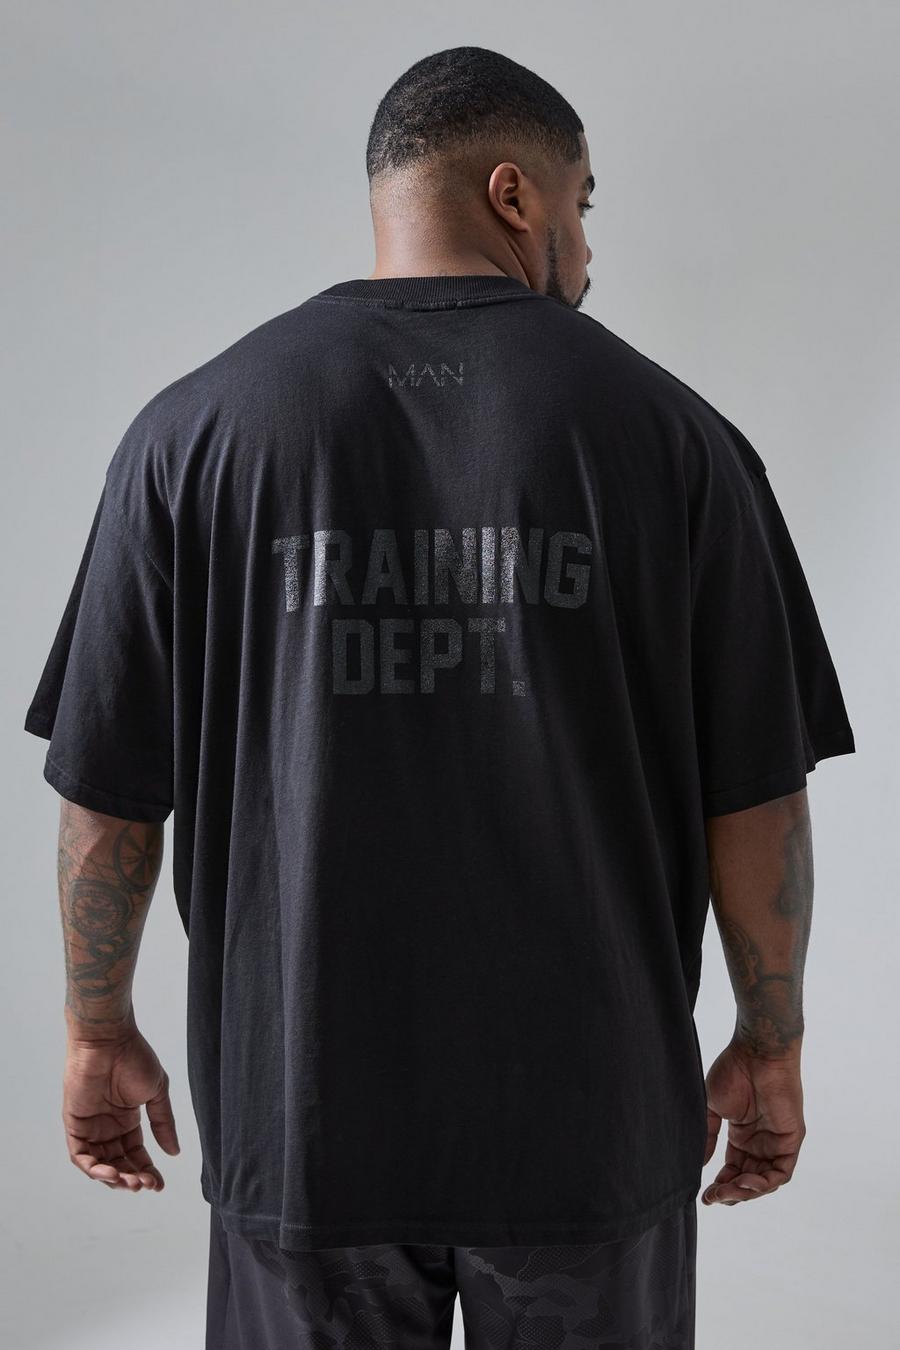 Camiseta Plus oversize Active Training Dept, Black